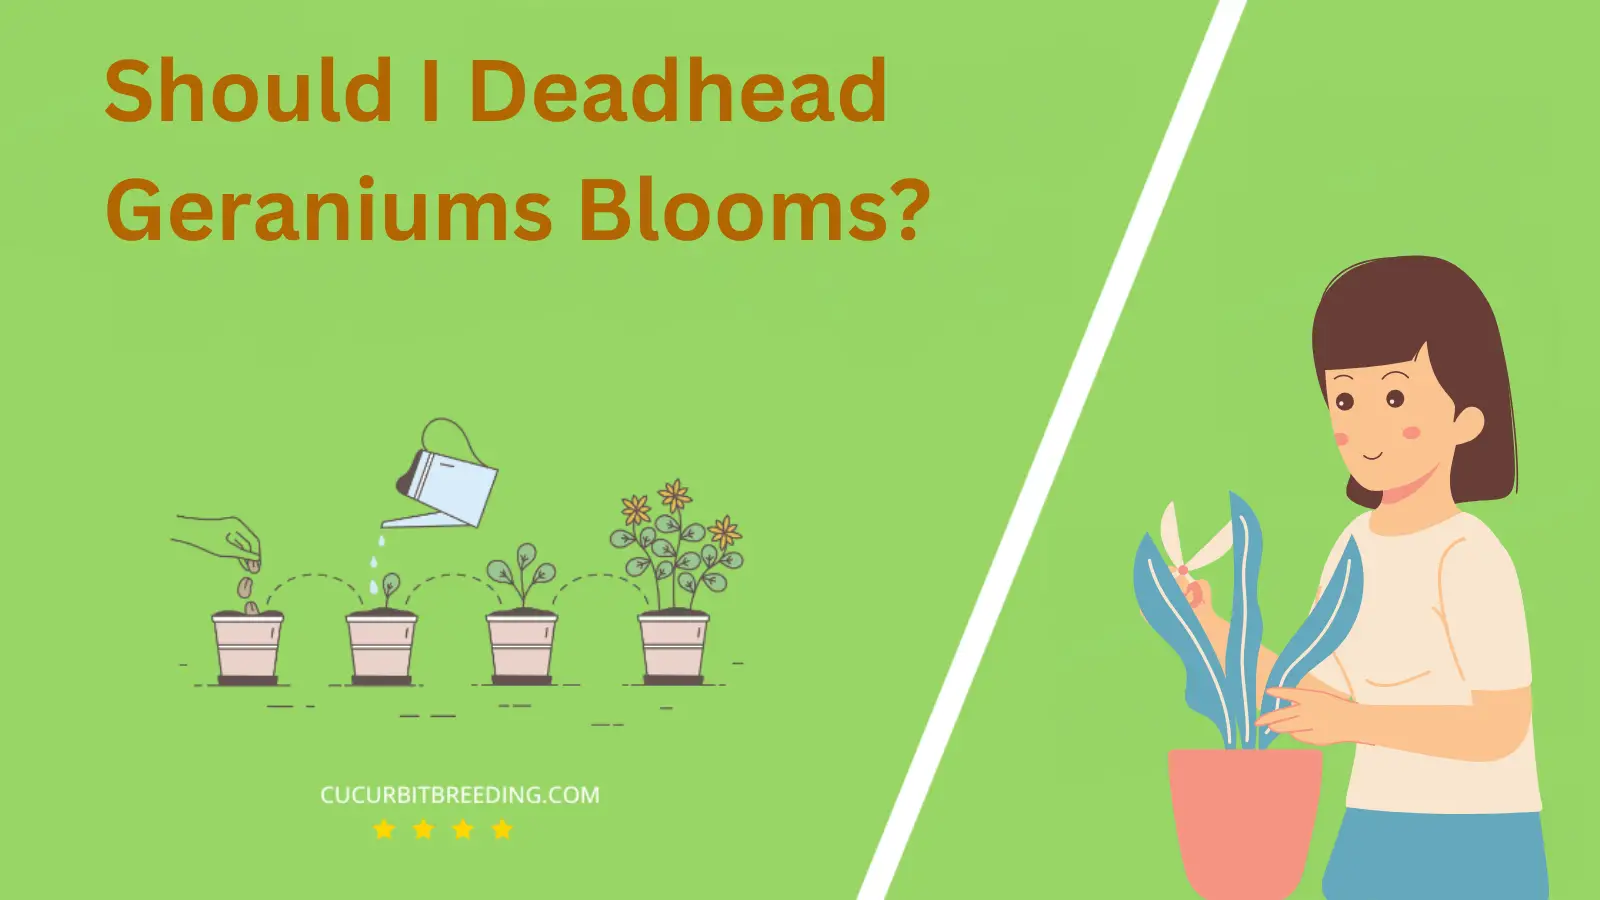 Should I Deadhead Geraniums Blooms?